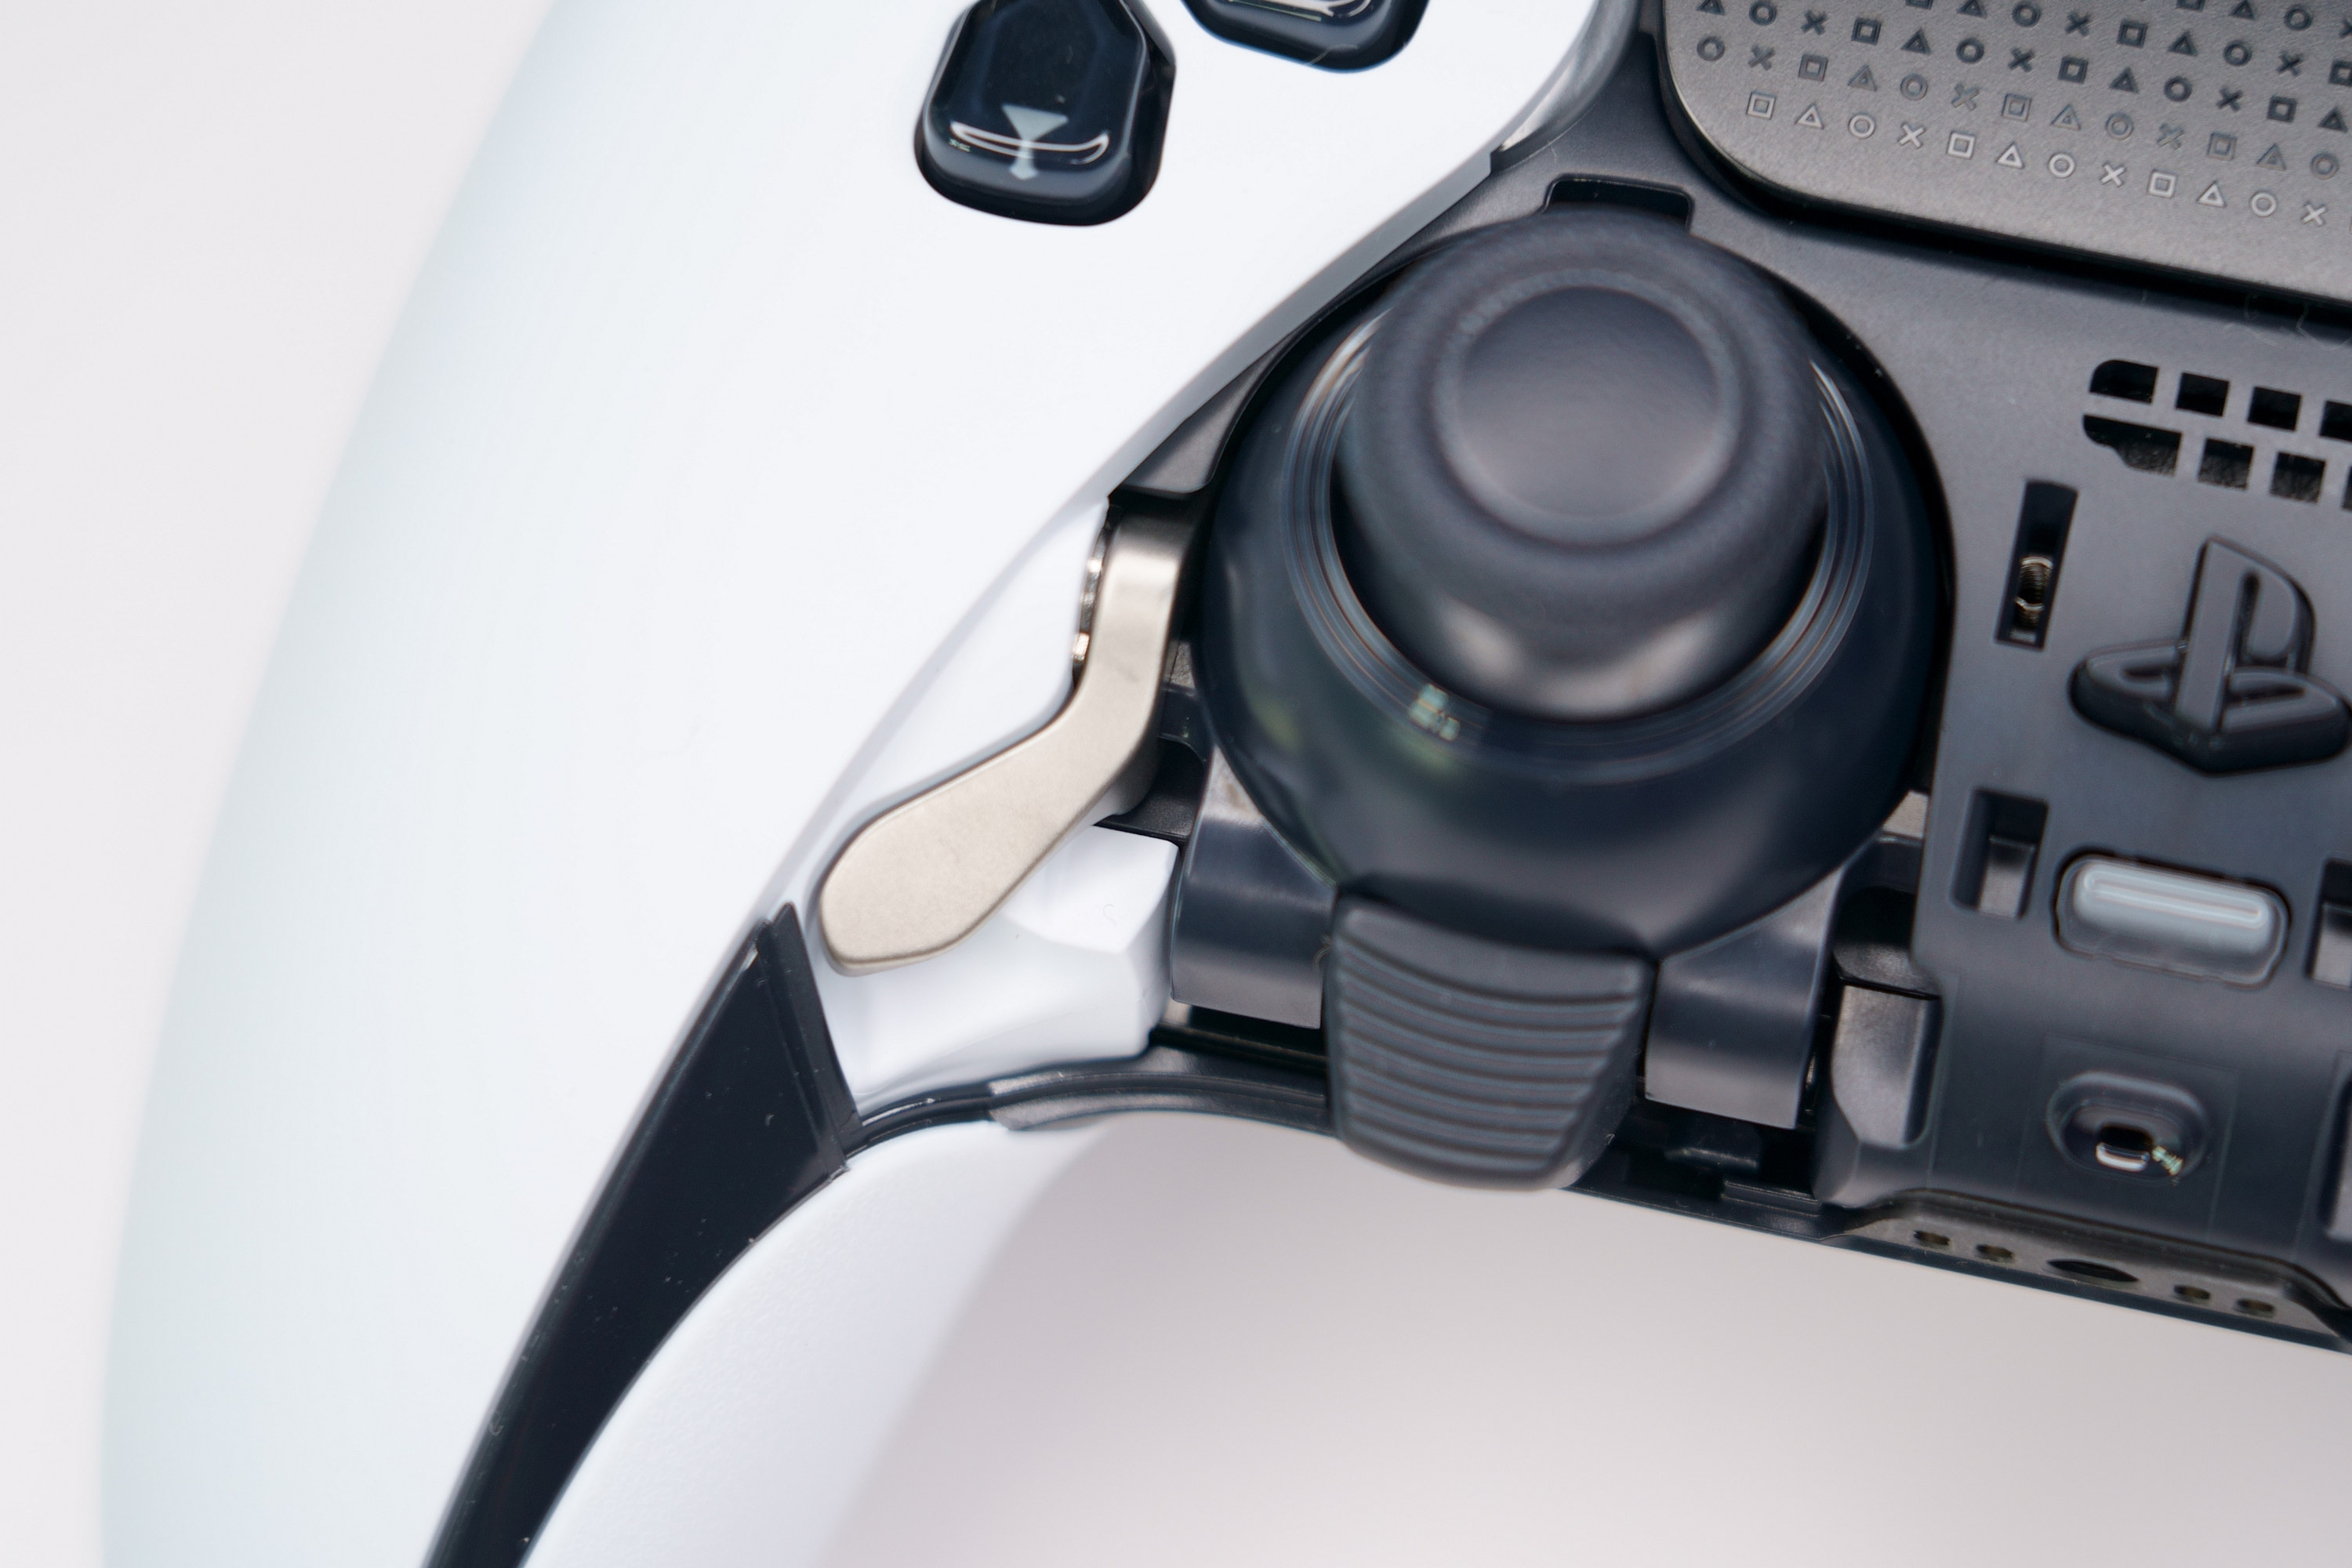 PS5 DualSense Edge 高效能控制器一手开箱 丰富自订功能满足各类型玩家需求插图48